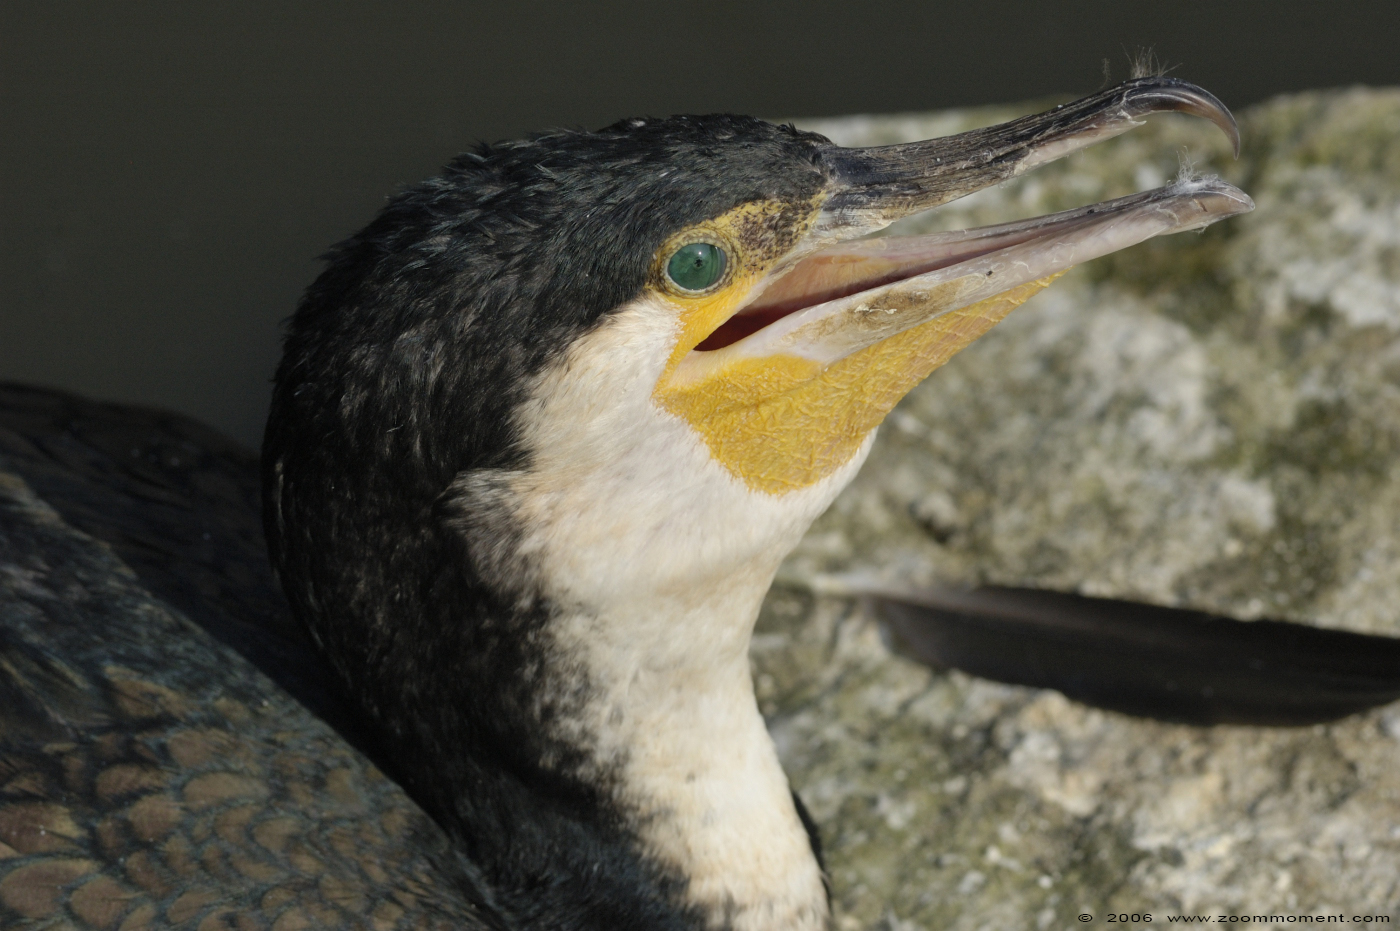 aalscholver  ( Phalacrocorax Carbo )  black cormorant
Trefwoorden: Olmen zoo Belgie Belgium aalscholver Phalacrocorax Carbo black cormorant vogel bird